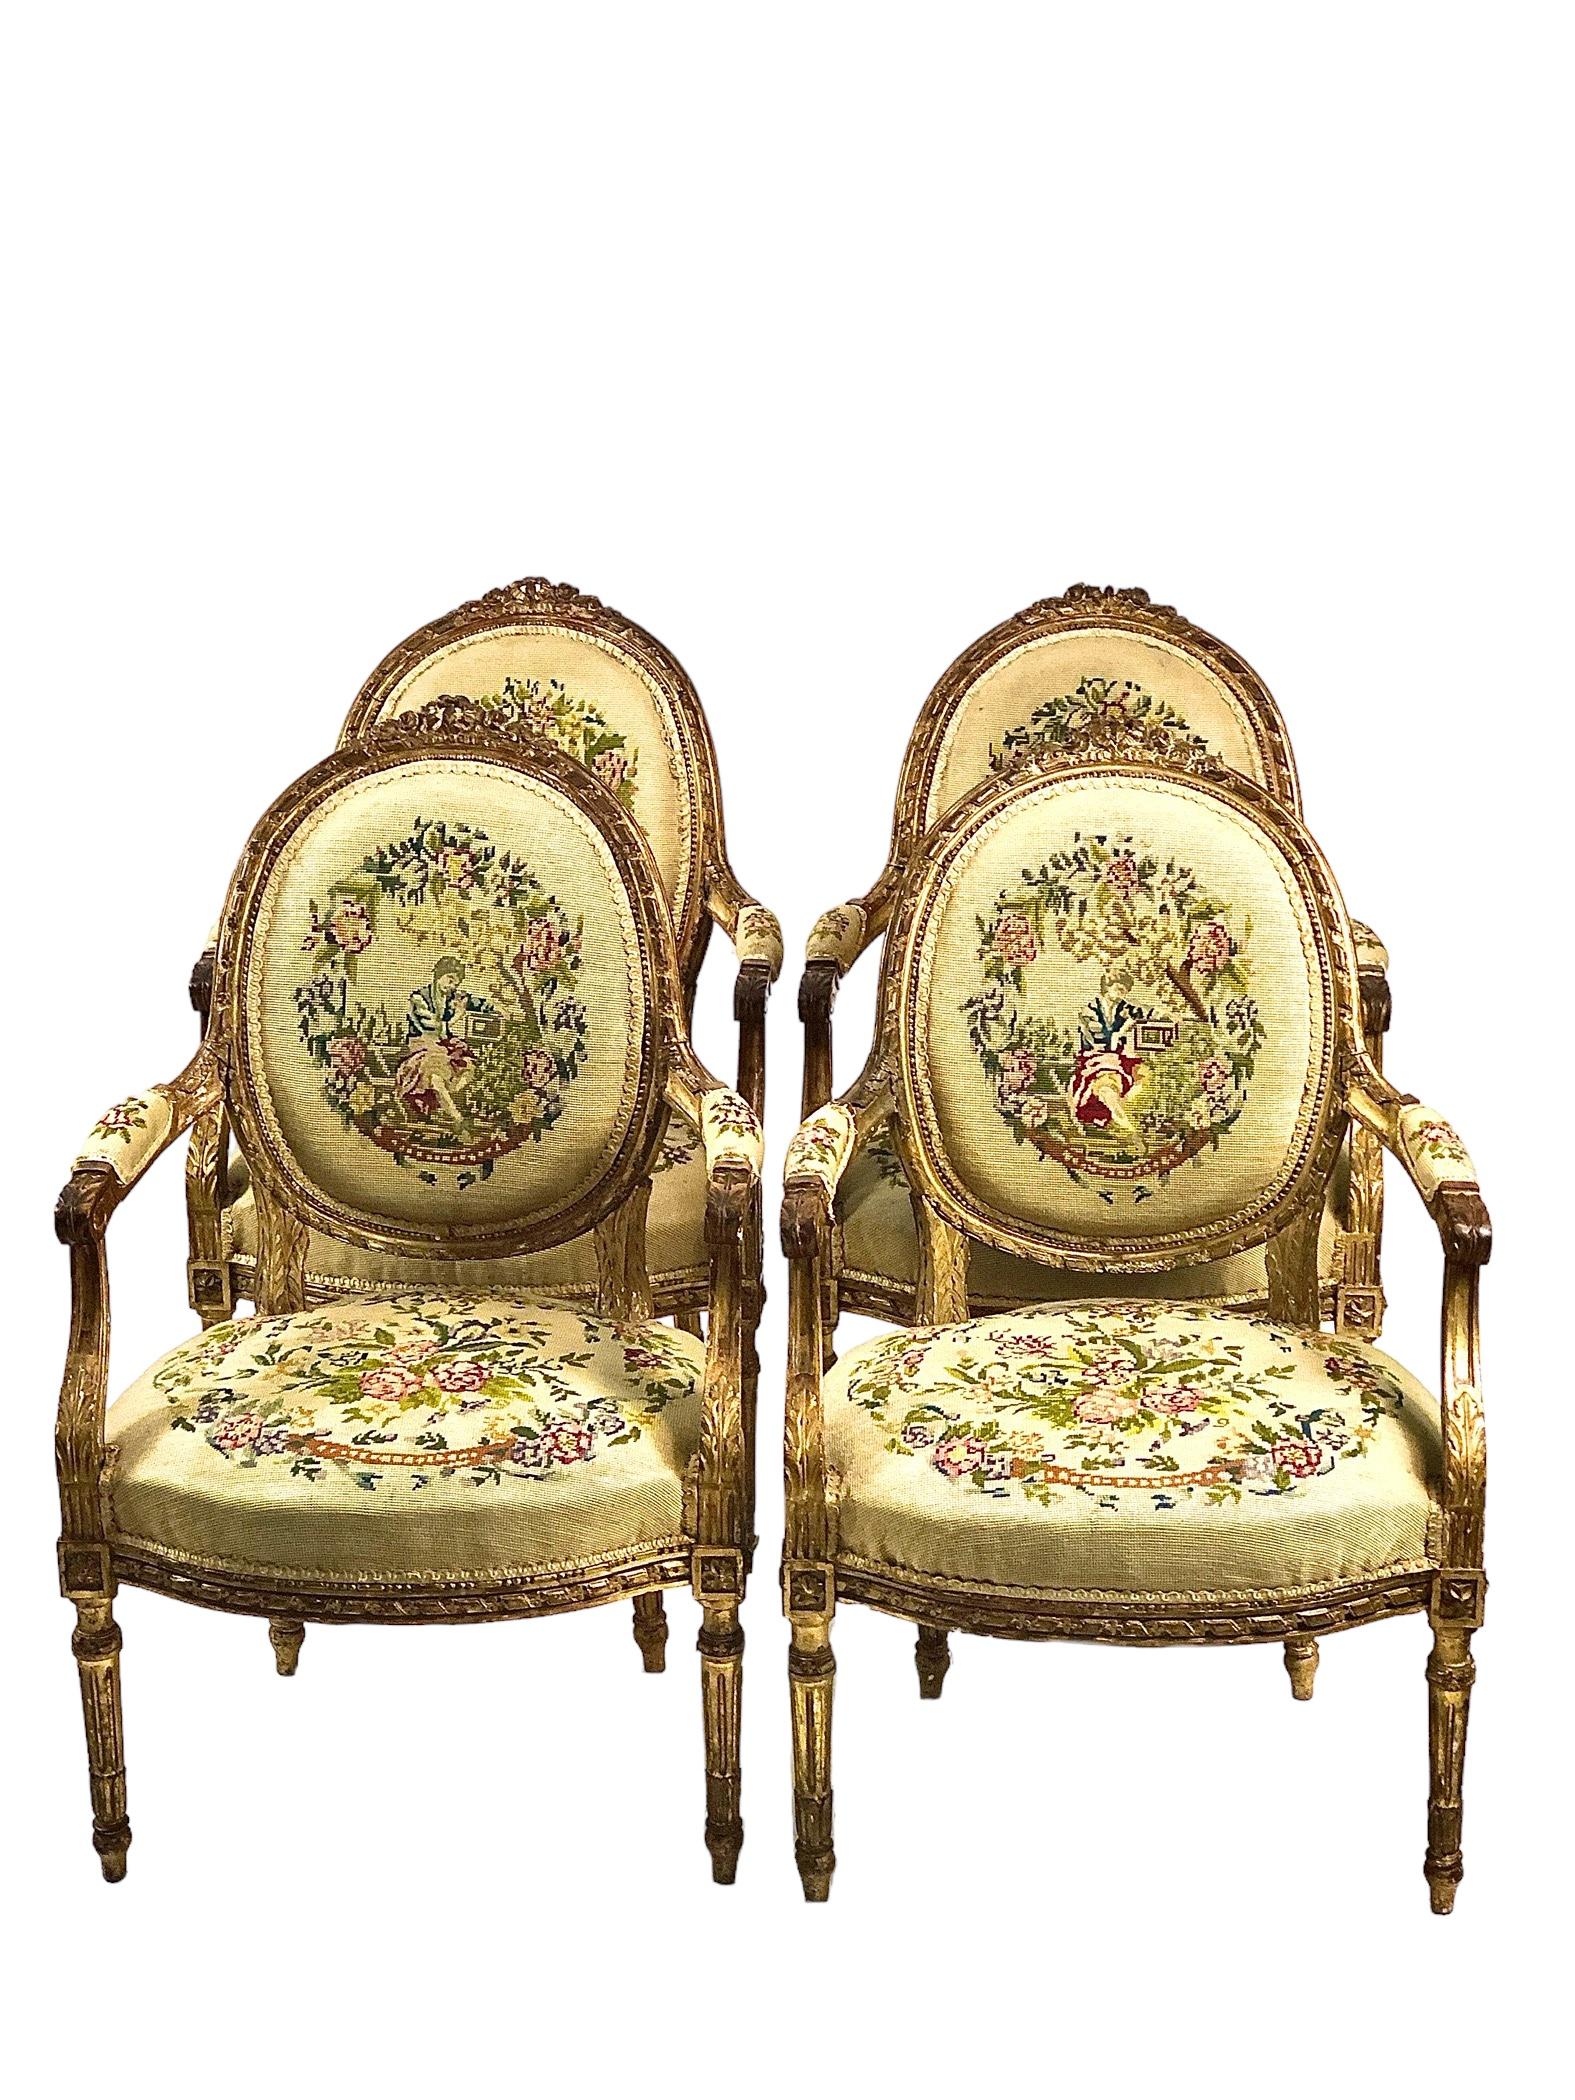 Eine exquisite Garnitur reich geschnitzter Salonmöbel aus vergoldetem Holz im Louis XVI-Stil, bestehend aus vier Fauteuil-Cabriolet-Sesseln mit ovaler Rückenlehne und einem passenden zweisitzigen Sofa. Jeder Stuhl dieses eleganten Sets ist an